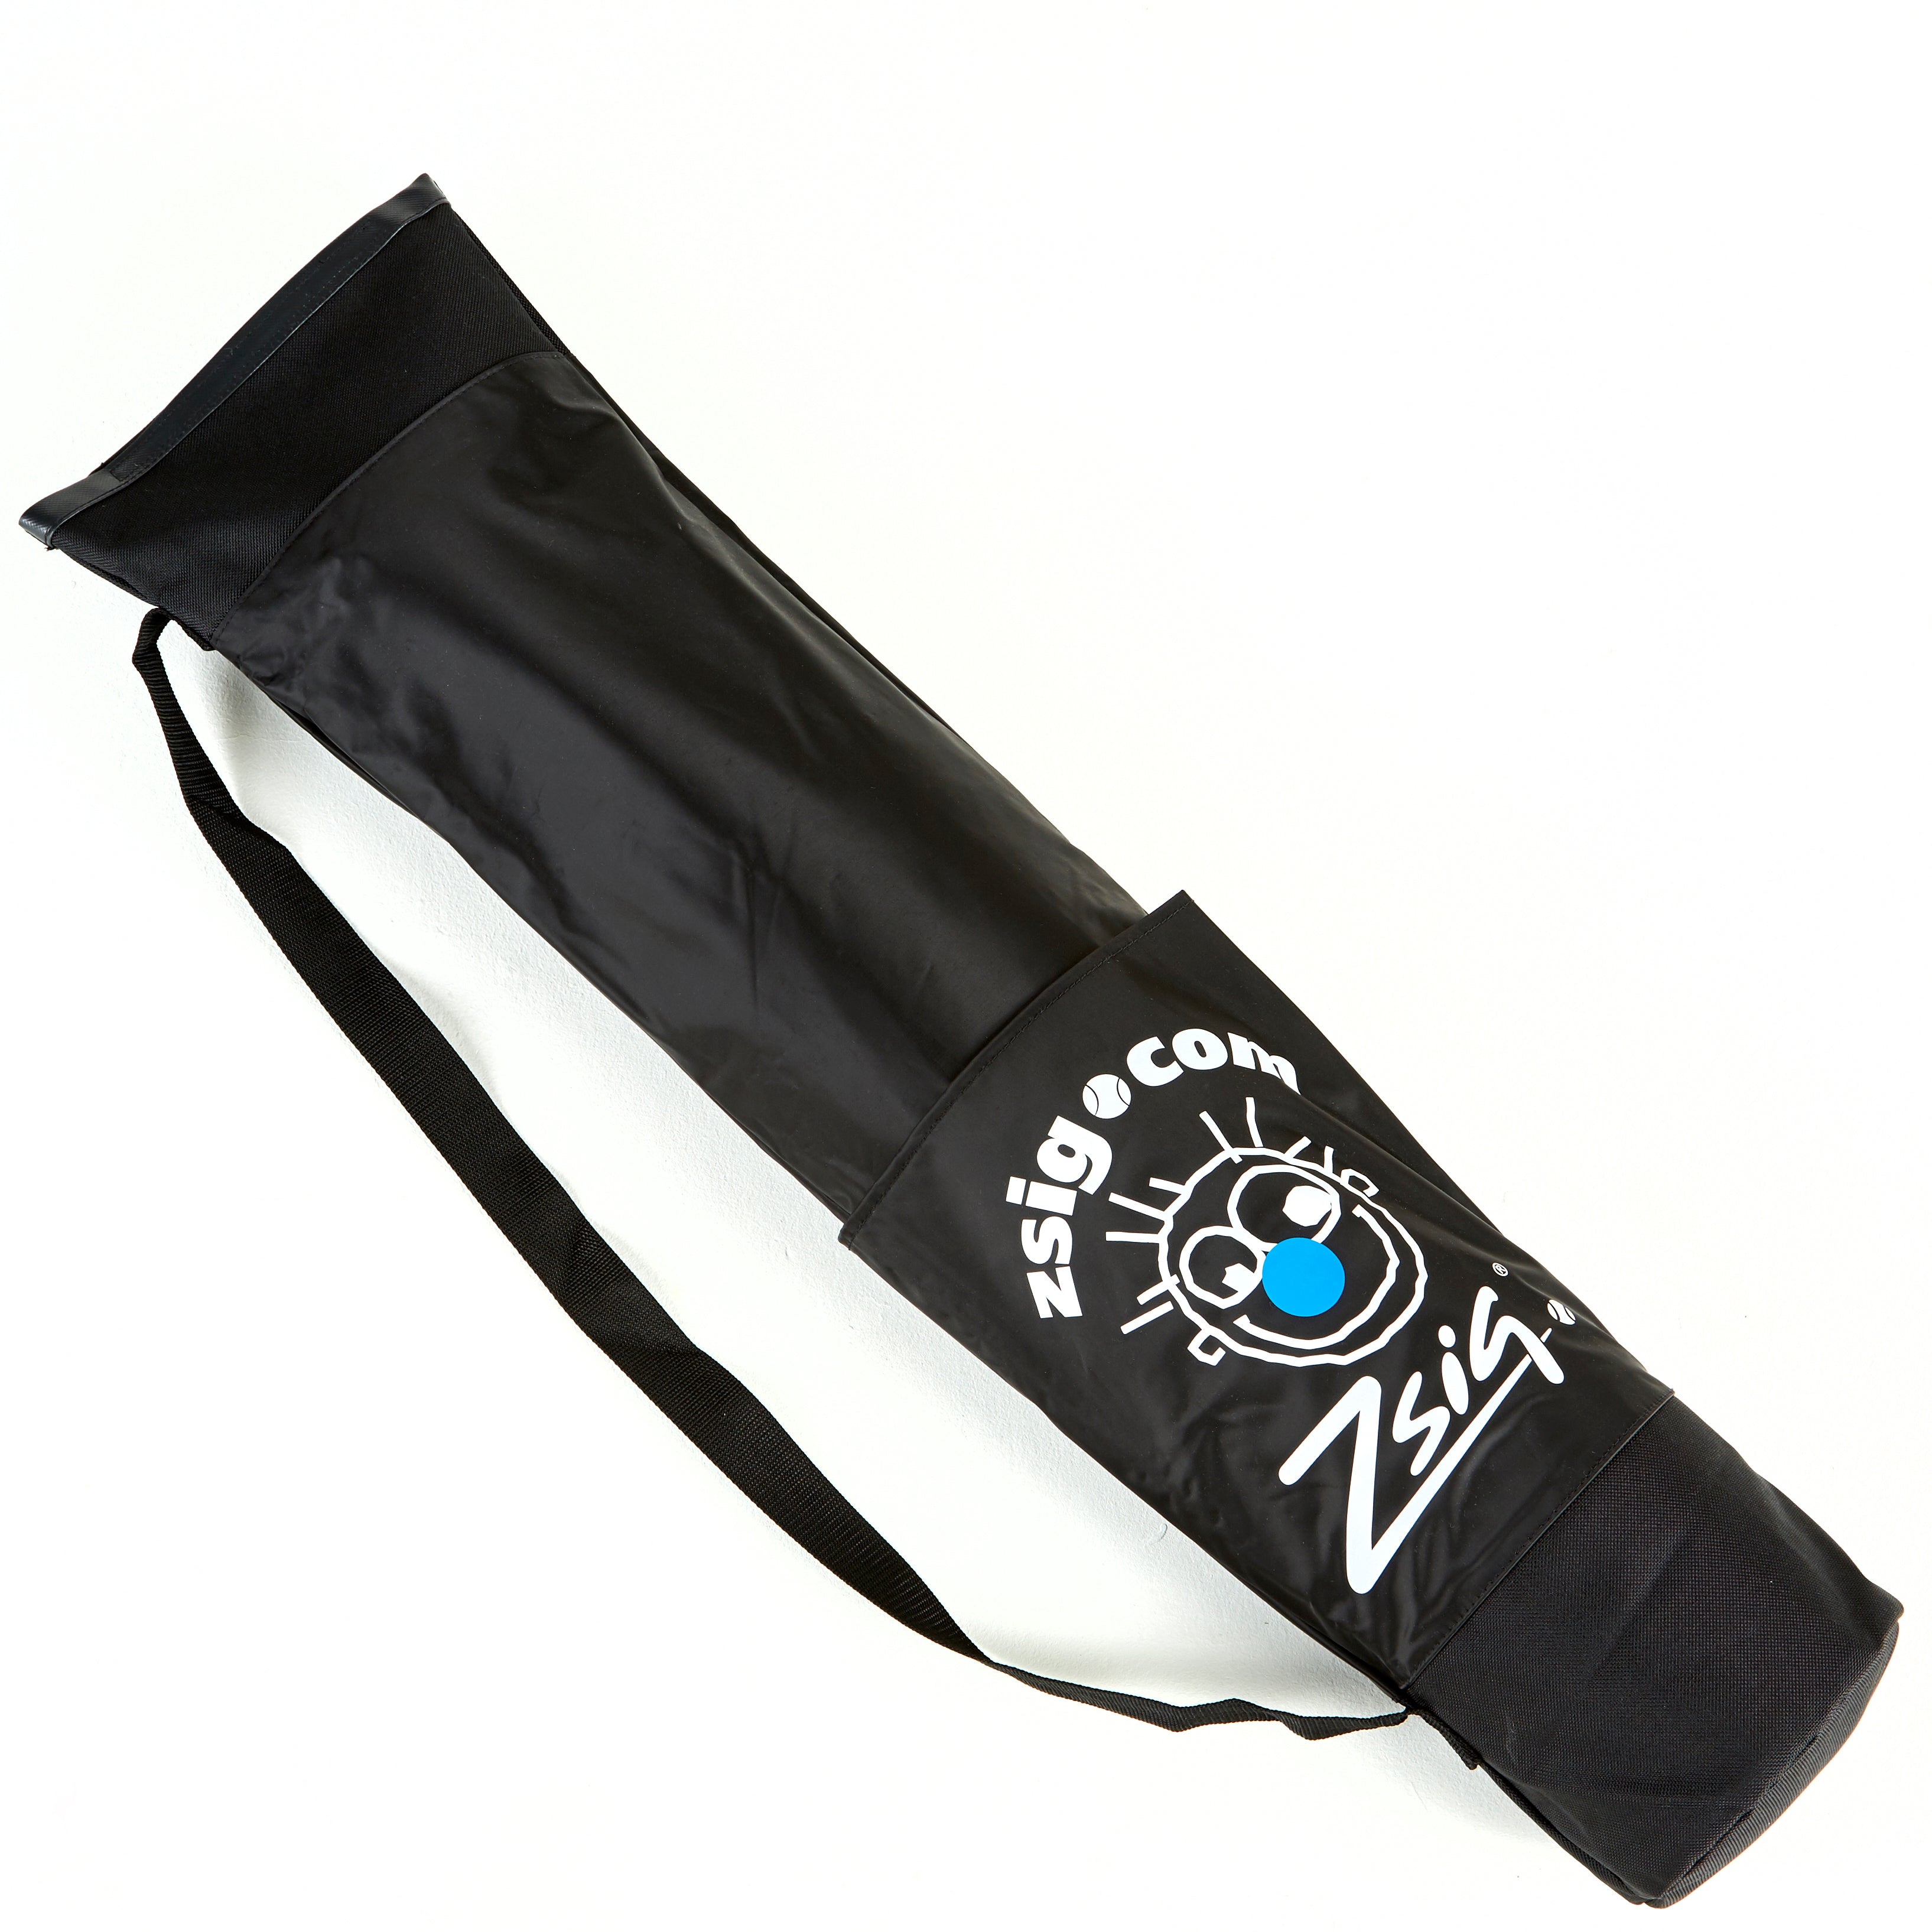 Zsig reinforced shoulder bag for 3m Classic Zsignet Badminton showing pocket for folded net